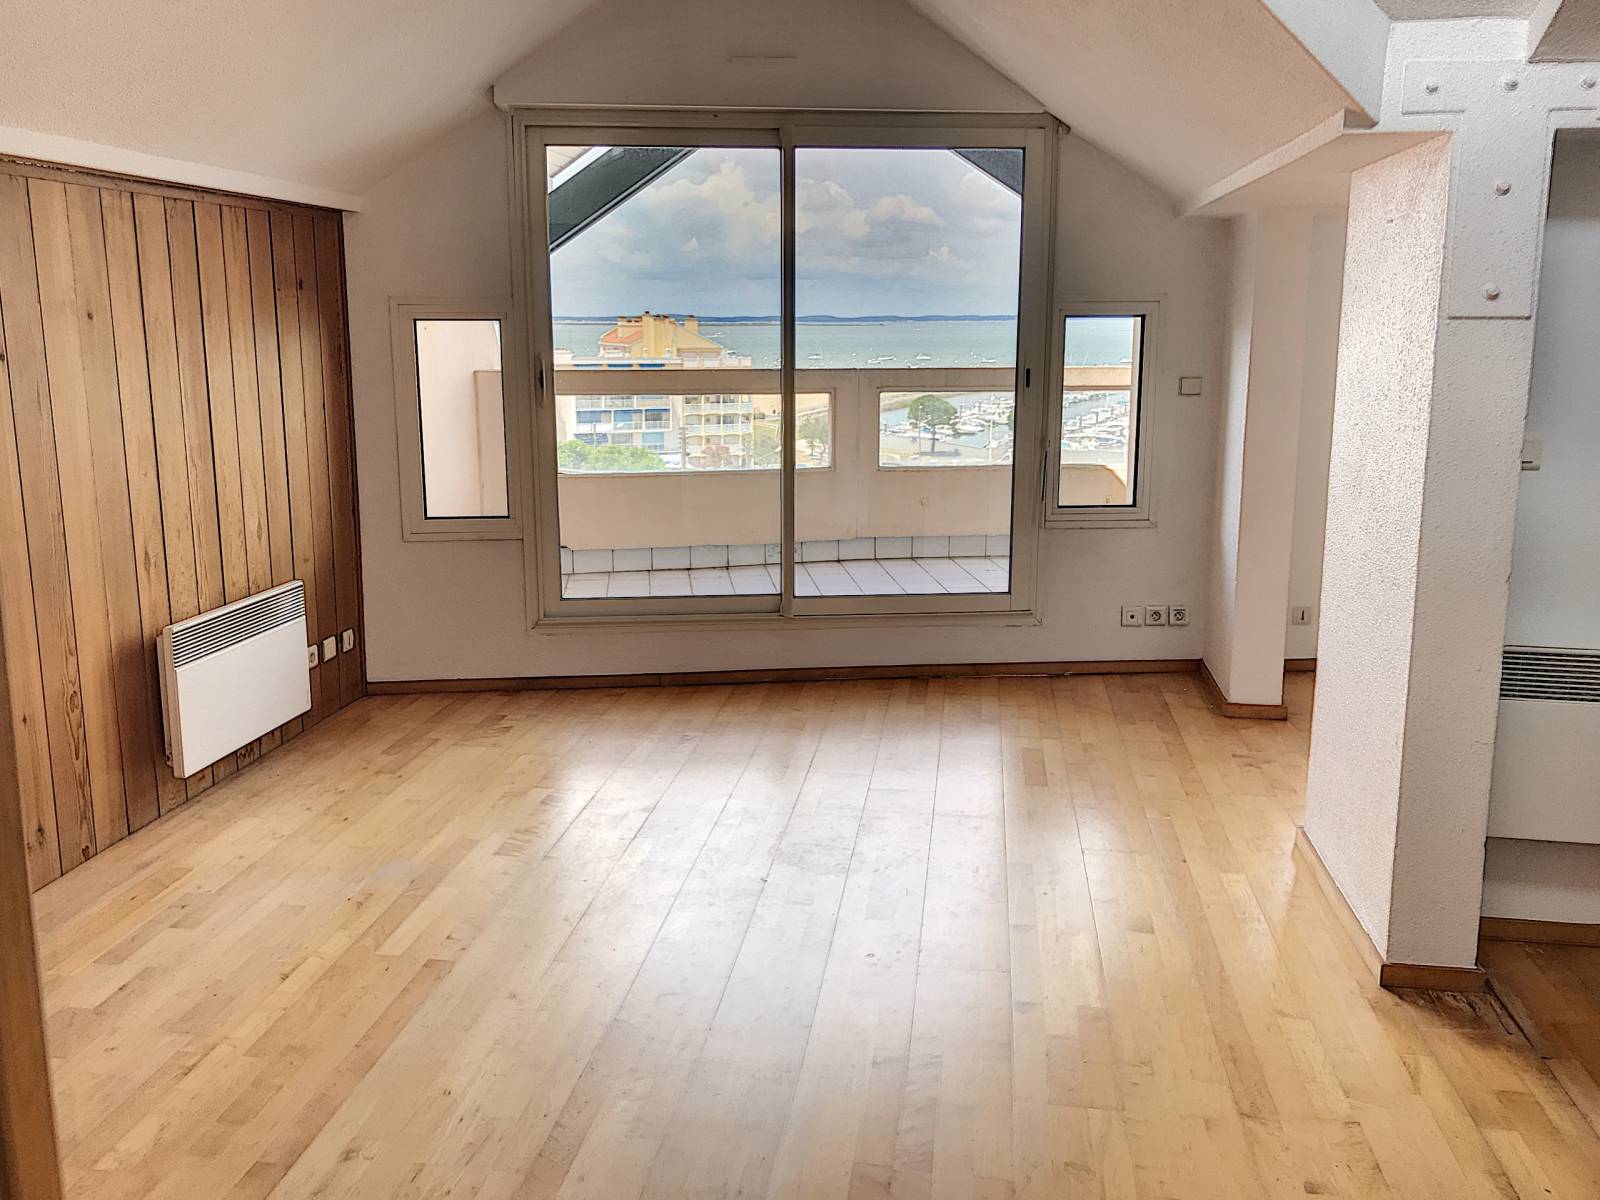 A vendre appartement au dernier étage avec une terrasse panoramique et la vue sur le port d'Arcachon